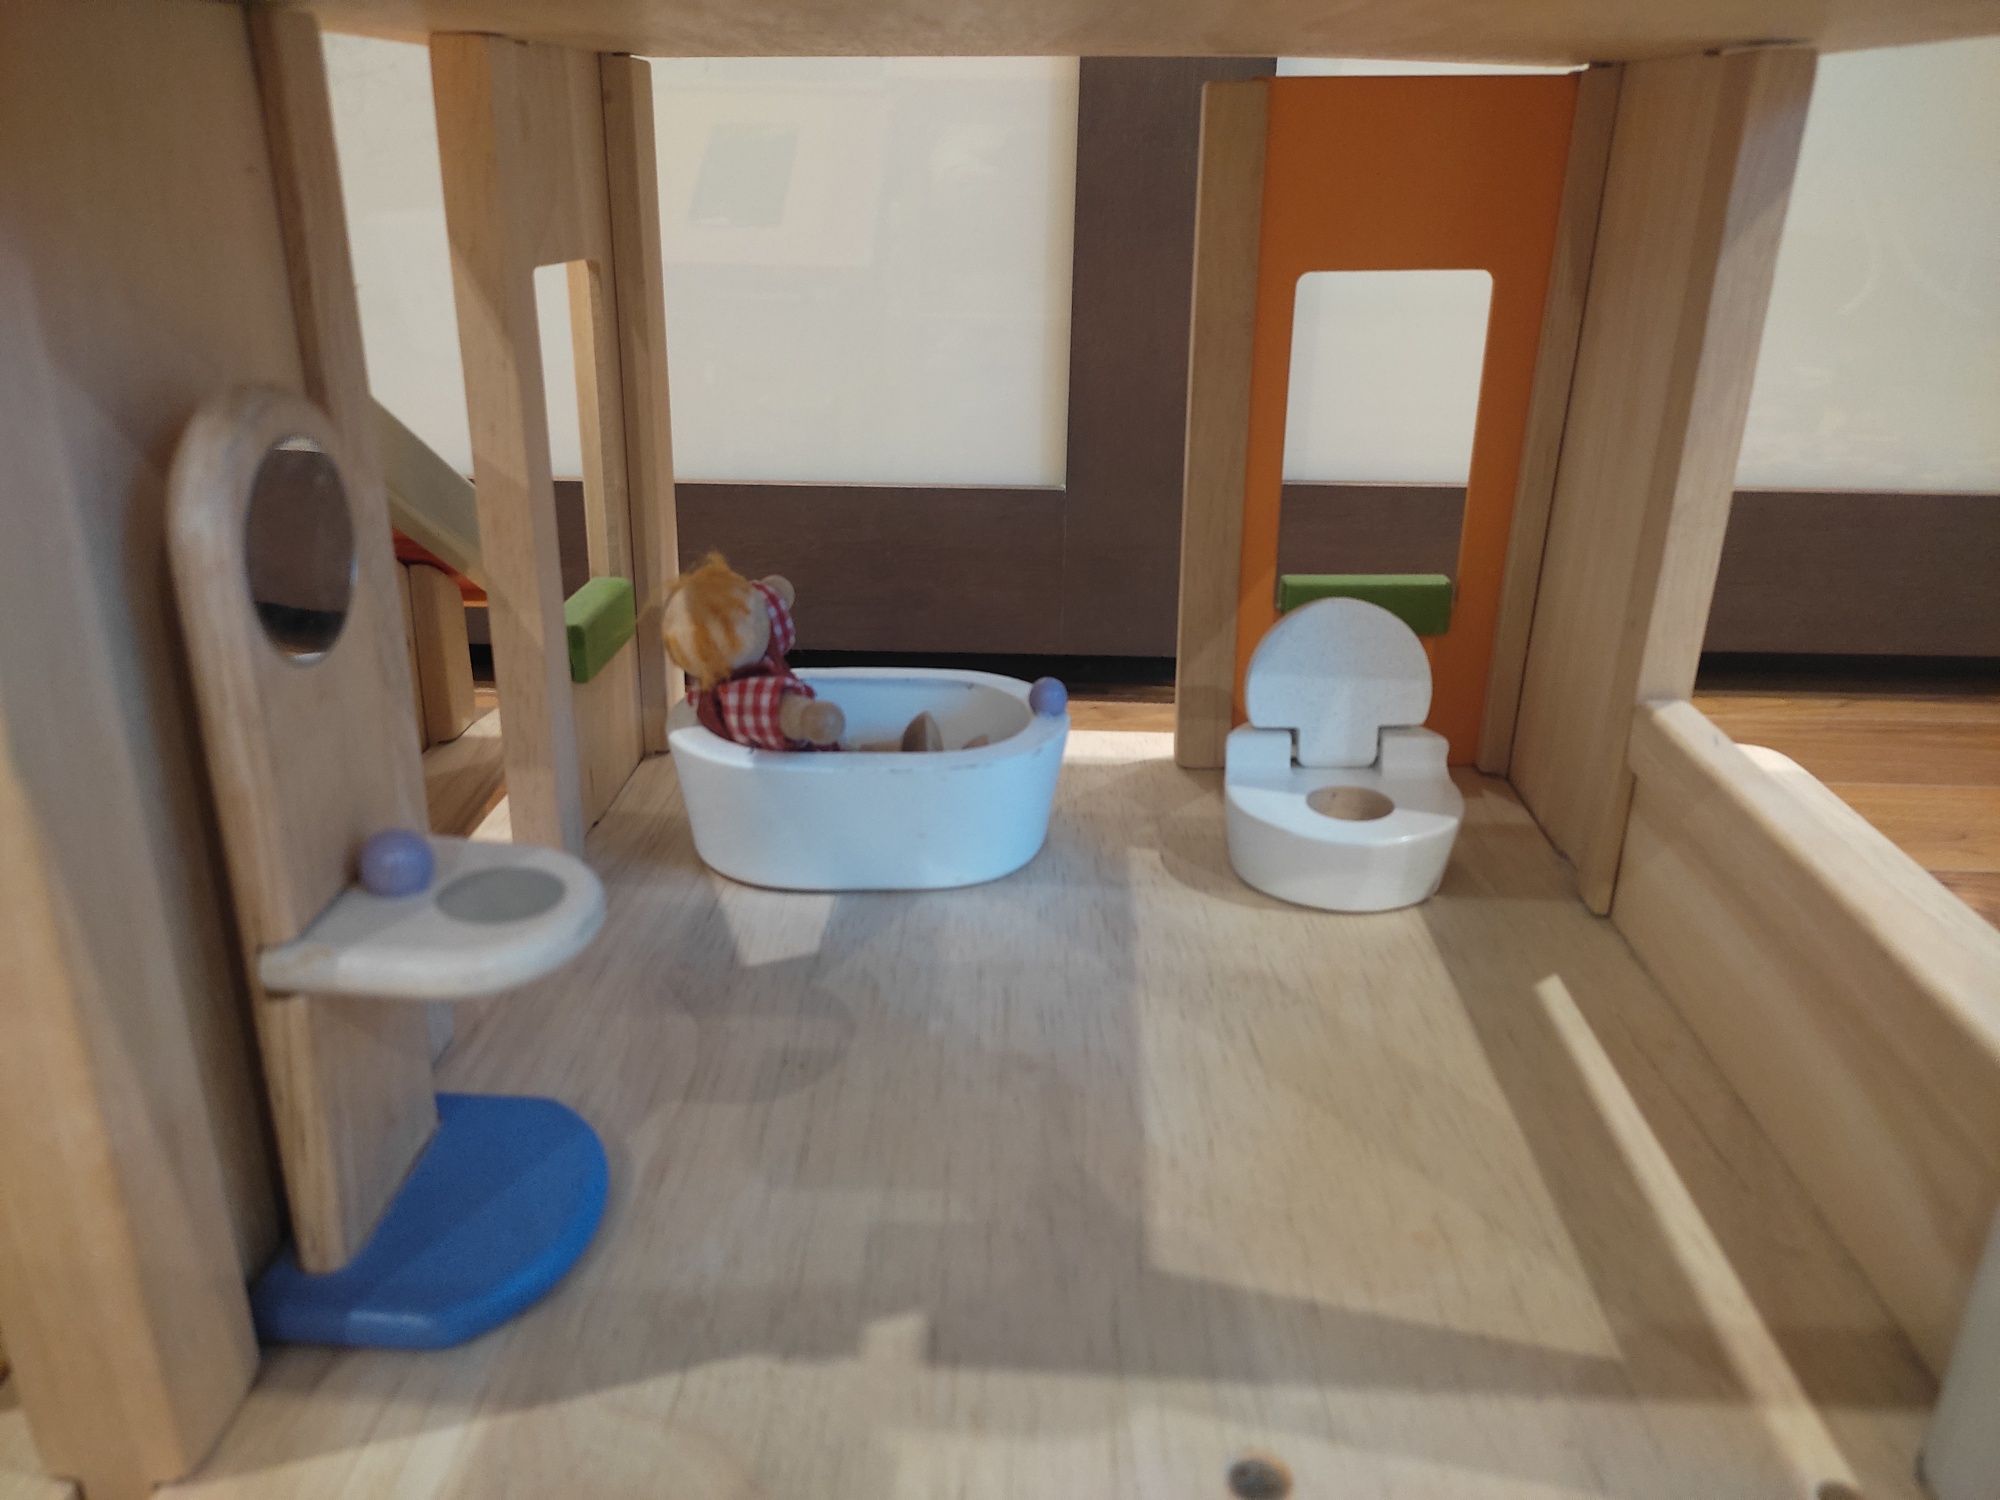 Domek Drewniany Plan Toys + 4 laleczki + plac zabaw + akcesoria domowe